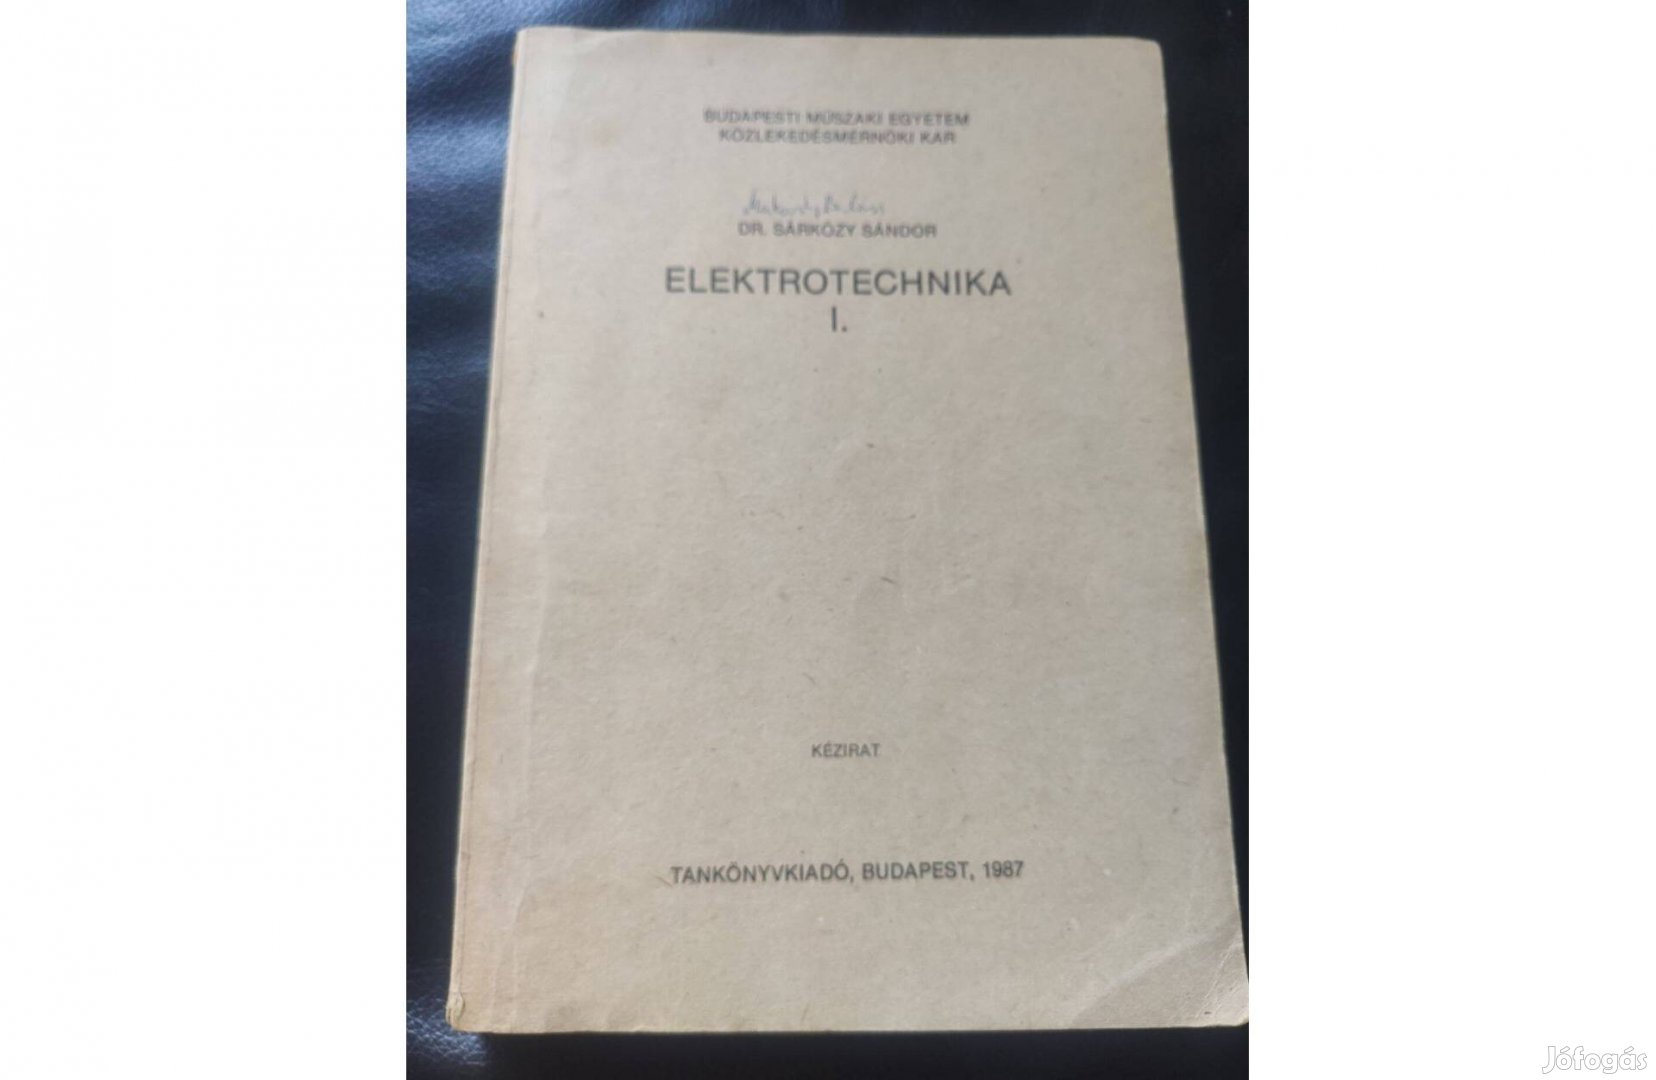 Dr. Sáráközy Sándor : Elektrotechnika I